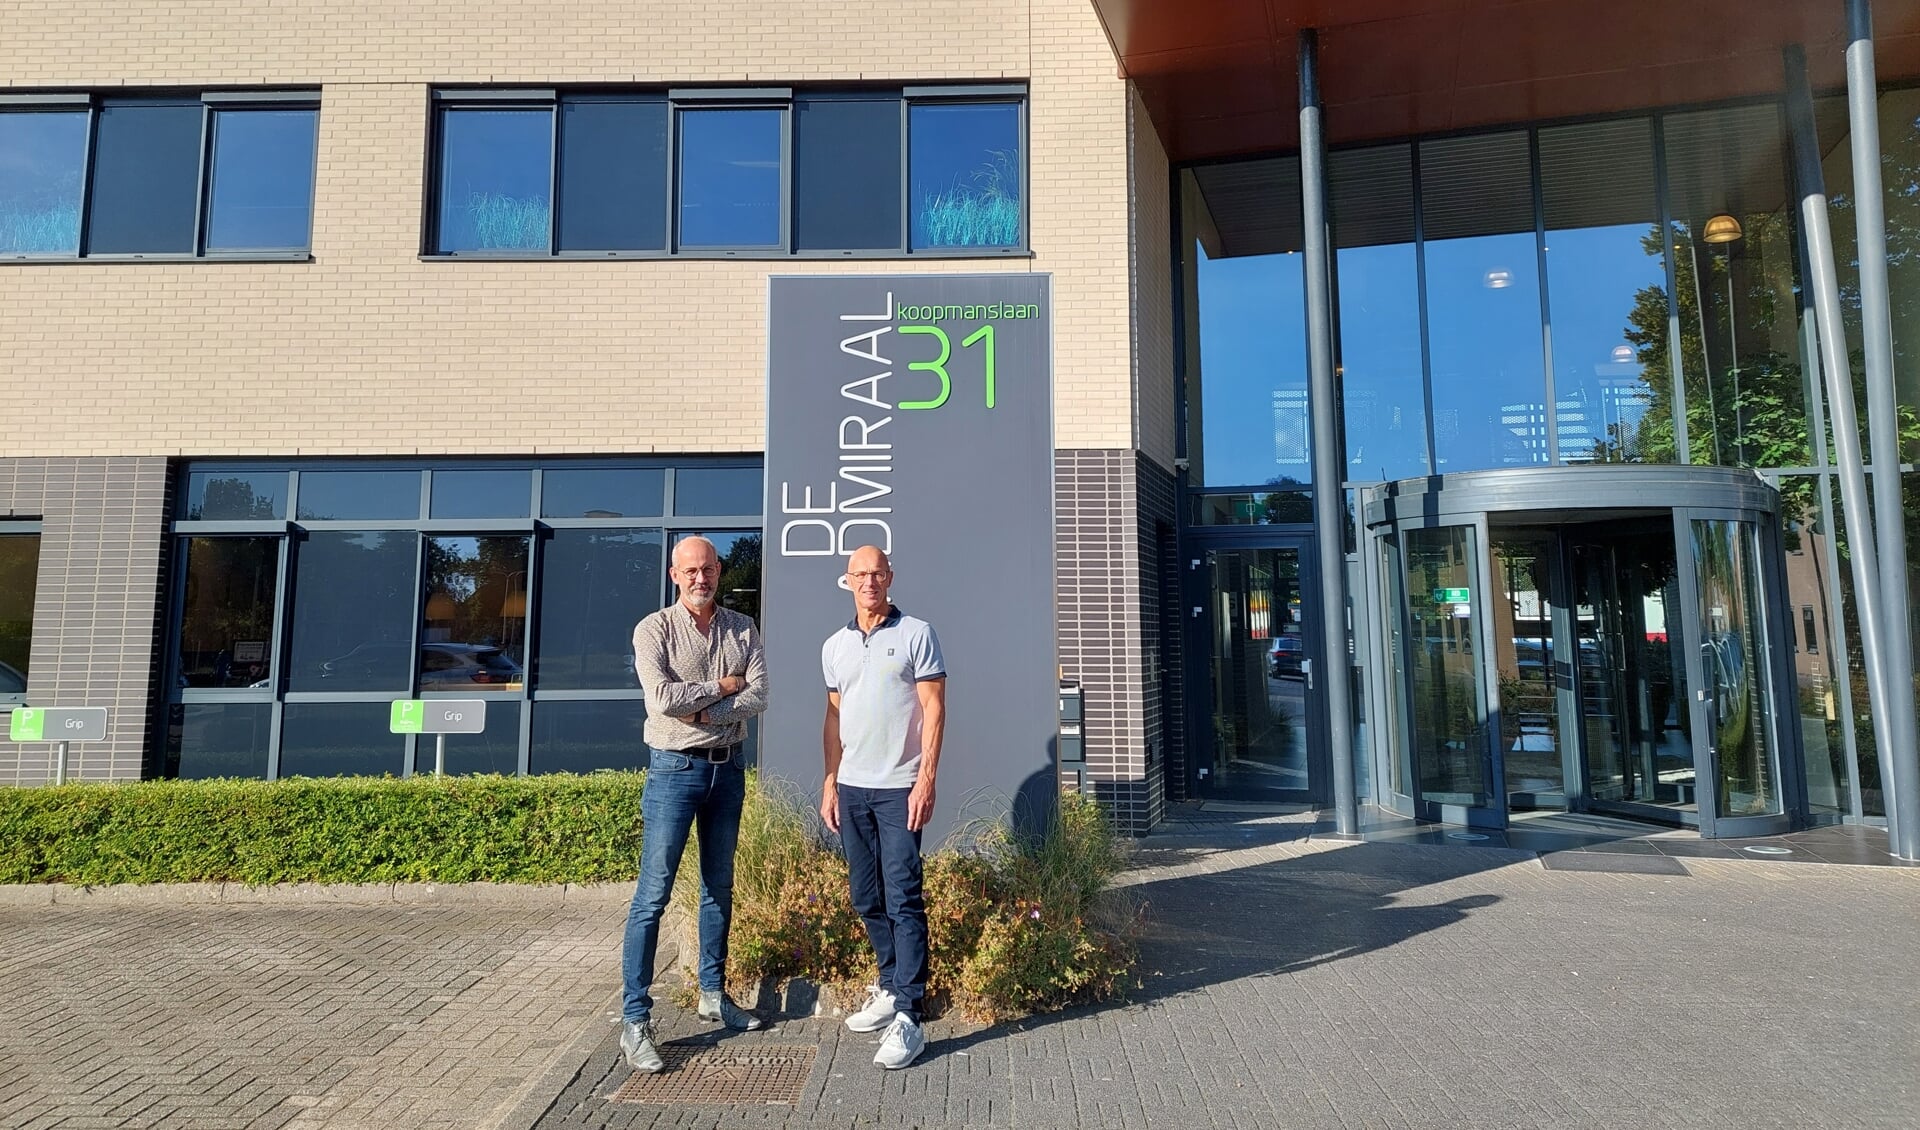 Jan Helmink en Ronald Treijtel voor de nieuwe locatie van Flox aan de Koopmanslaan 31 in Doetinchem. Foto: Tine Paulus